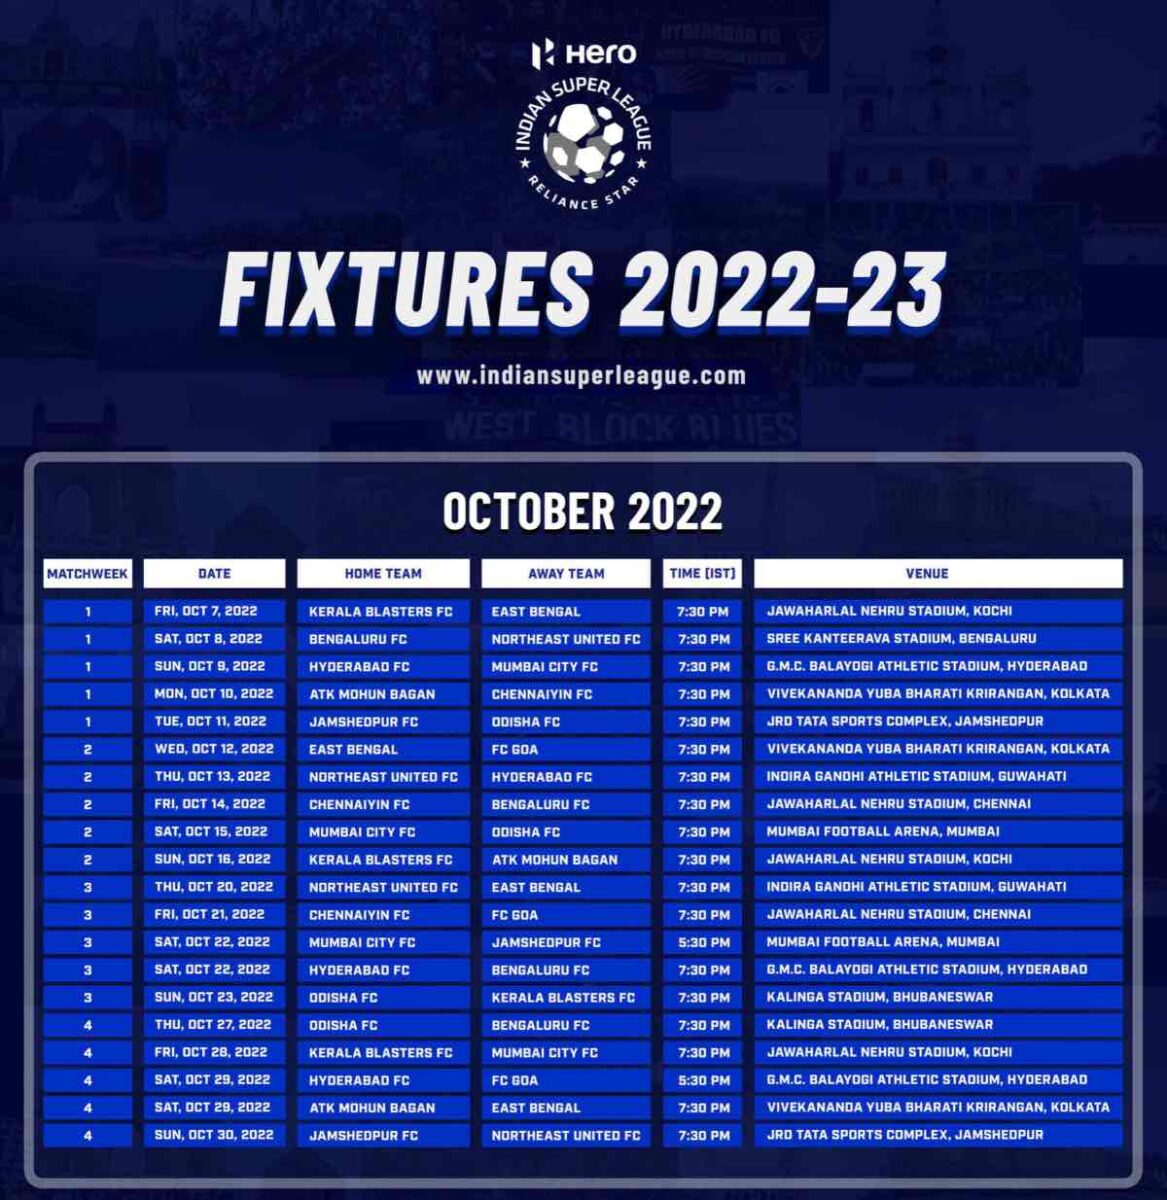 بازی ISL 2022-23: بازی سوپر لیگ هند 2022-23 اکتبر